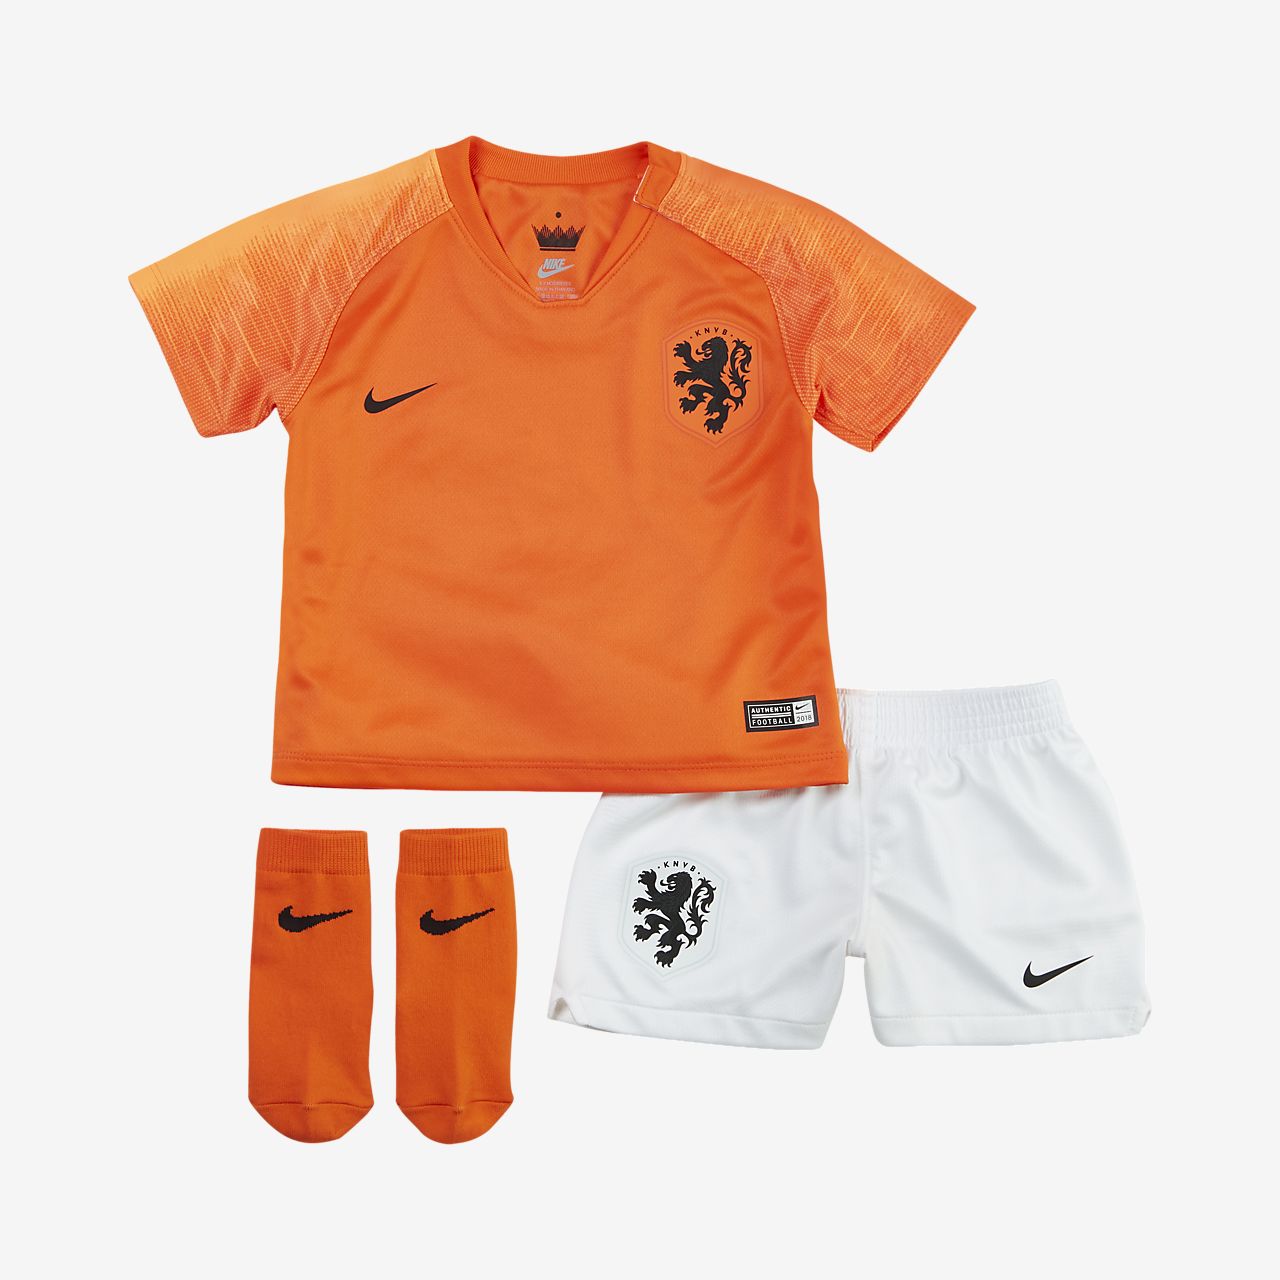 netherlands football jersey